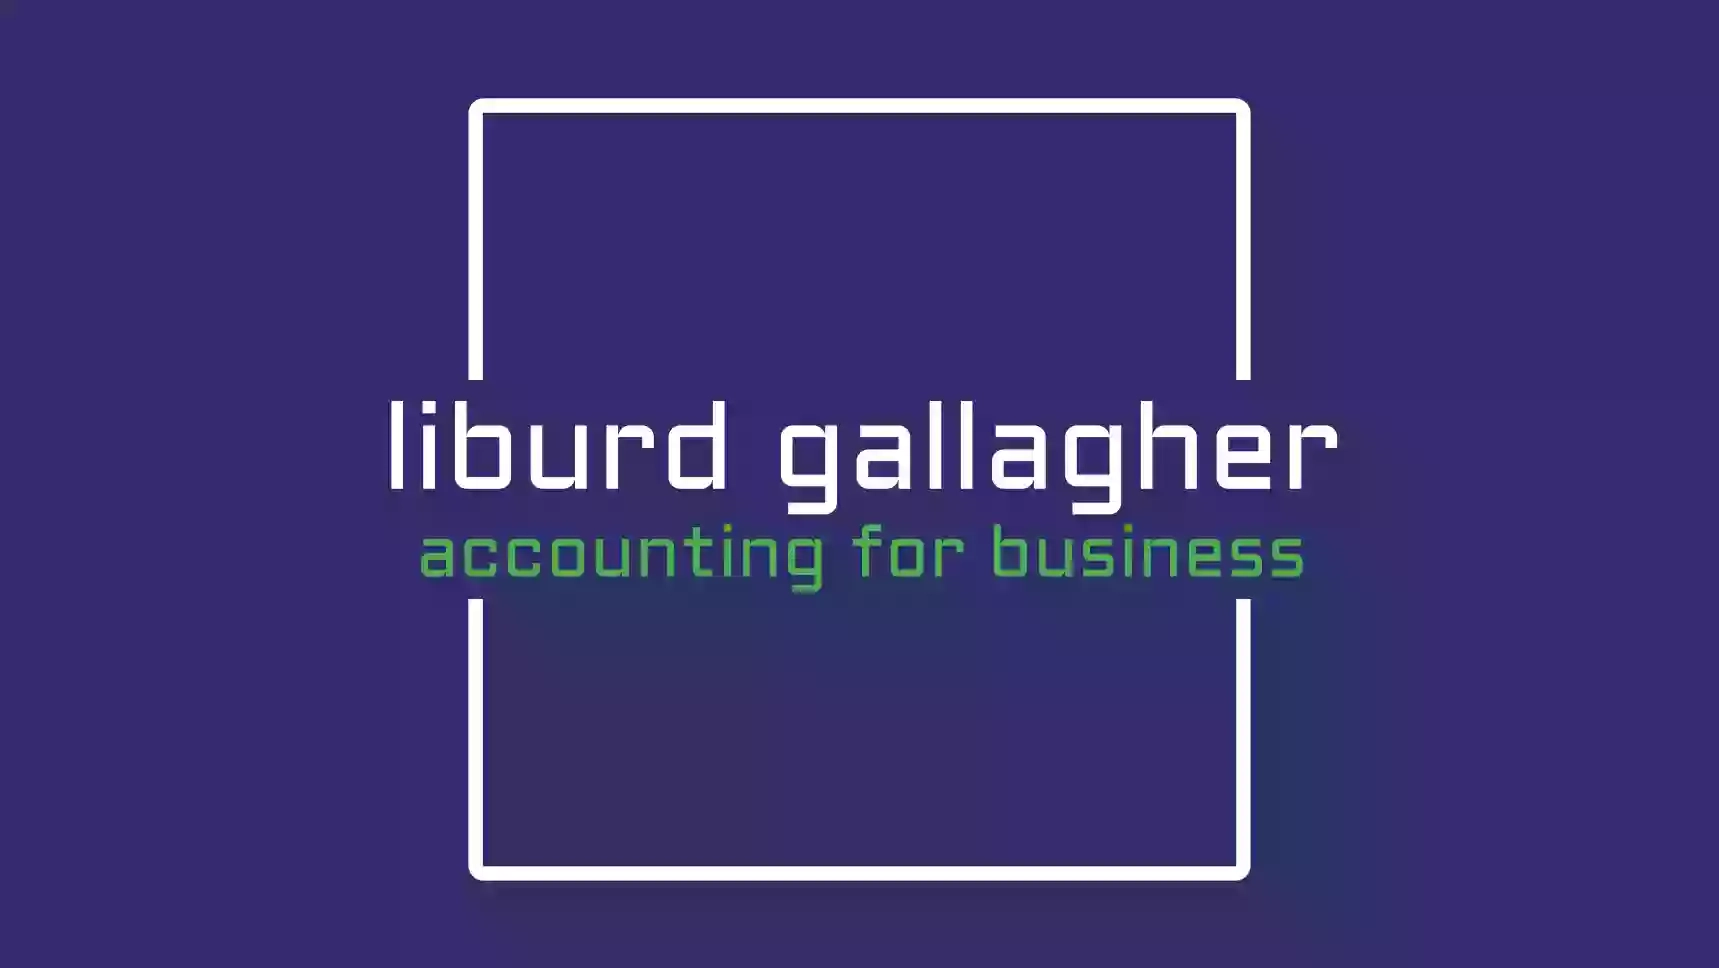 Liburd Gallagher Accountancy Ltd